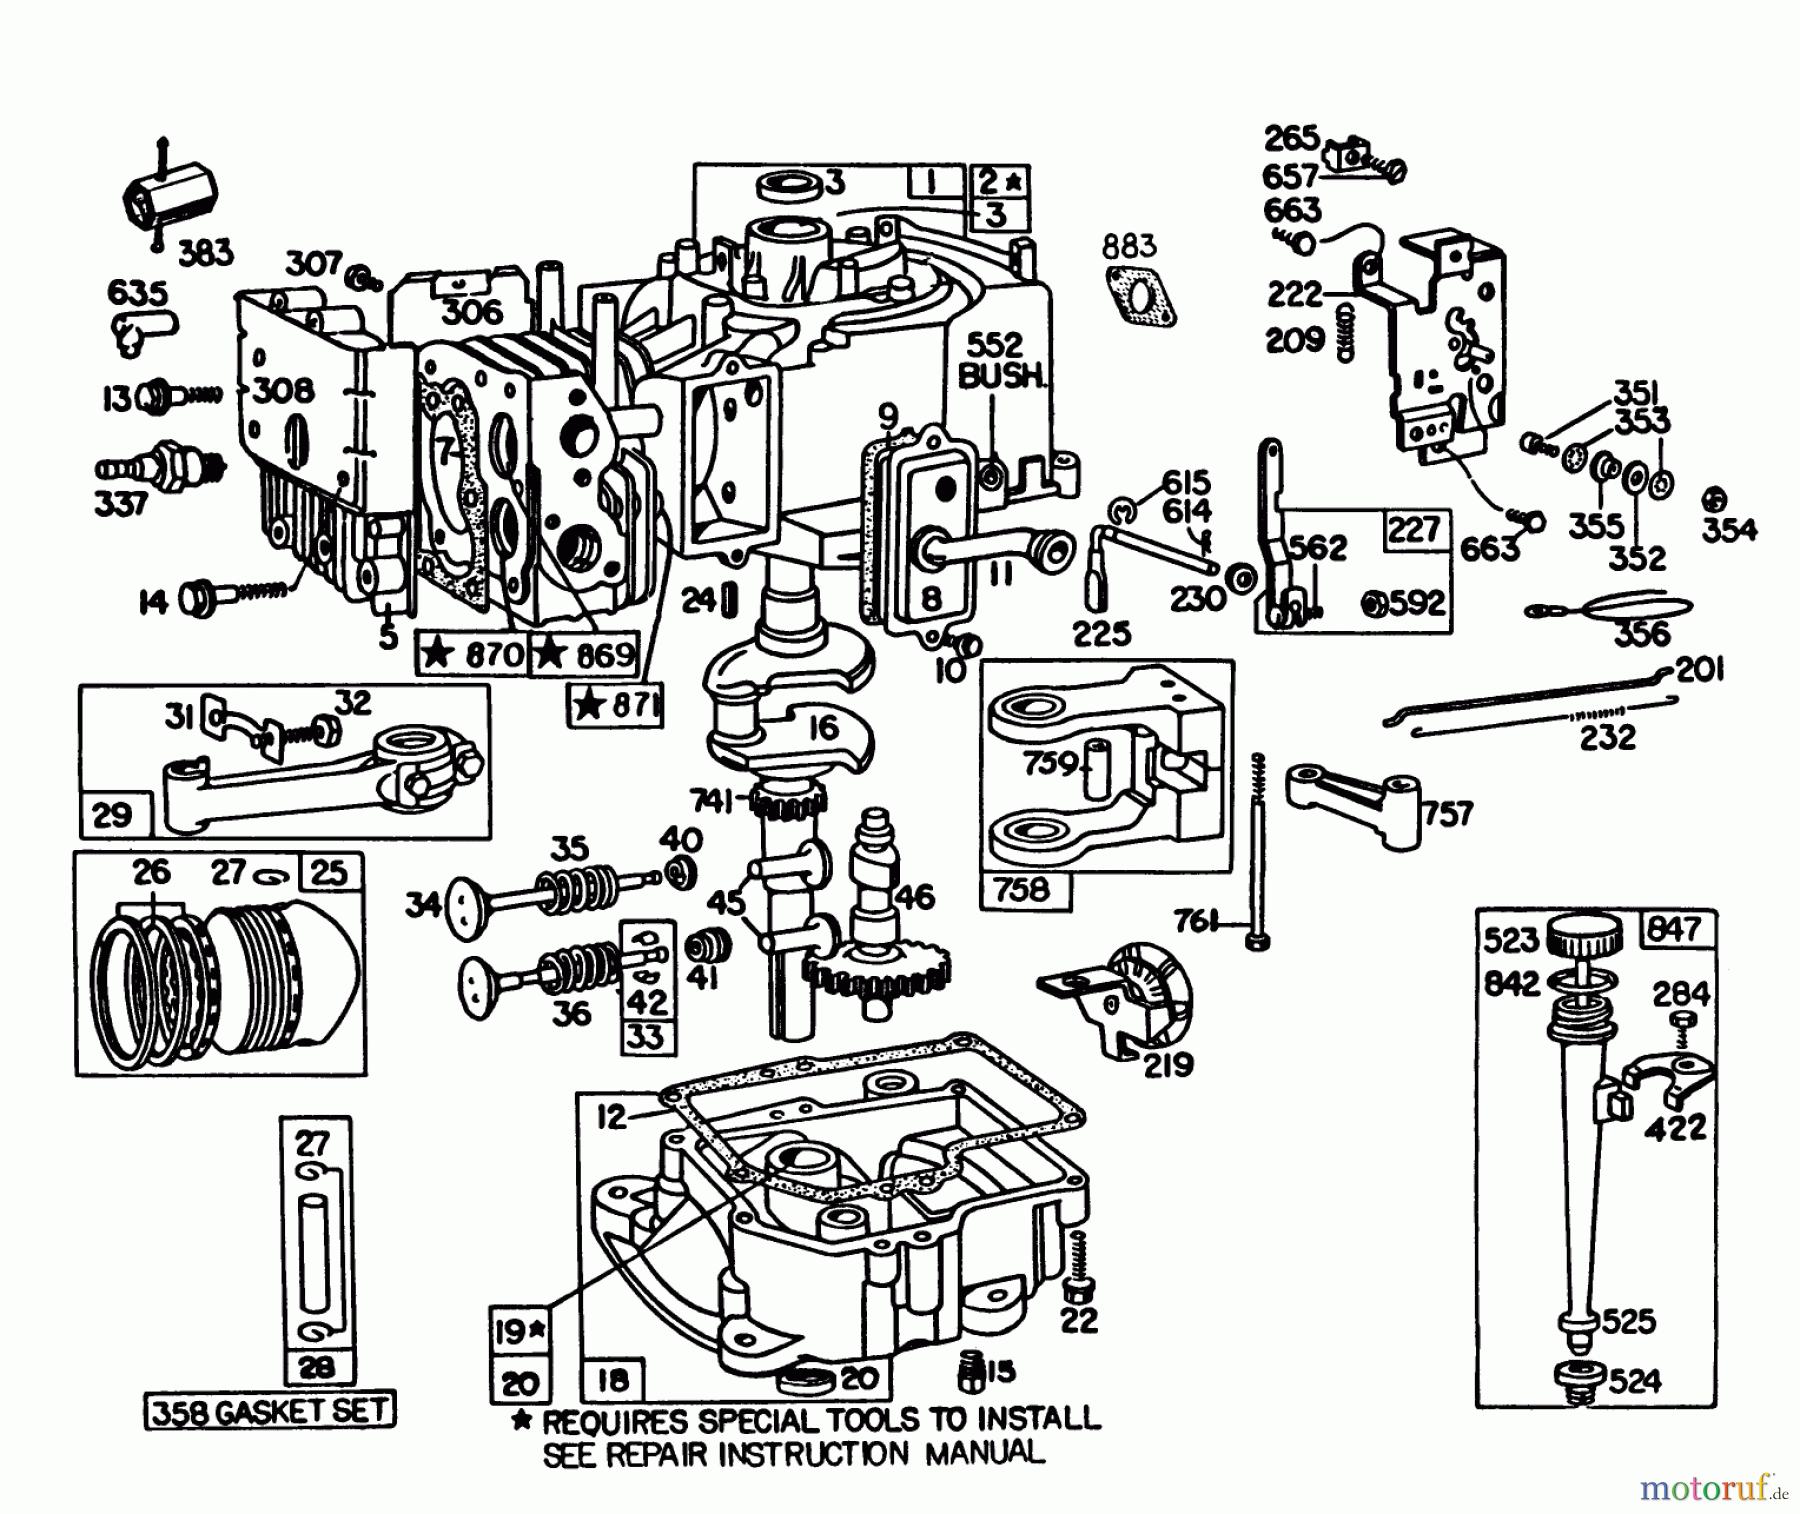  Toro Neu Mowers, Lawn & Garden Tractor Seite 1 57300 (8-32) - Toro 8-32 Front Engine Rider, 1984 (4000001-4999999) ENGINE BRIGGS & STRATTON MODEL 191707-5816-01 (MODEL 57300)